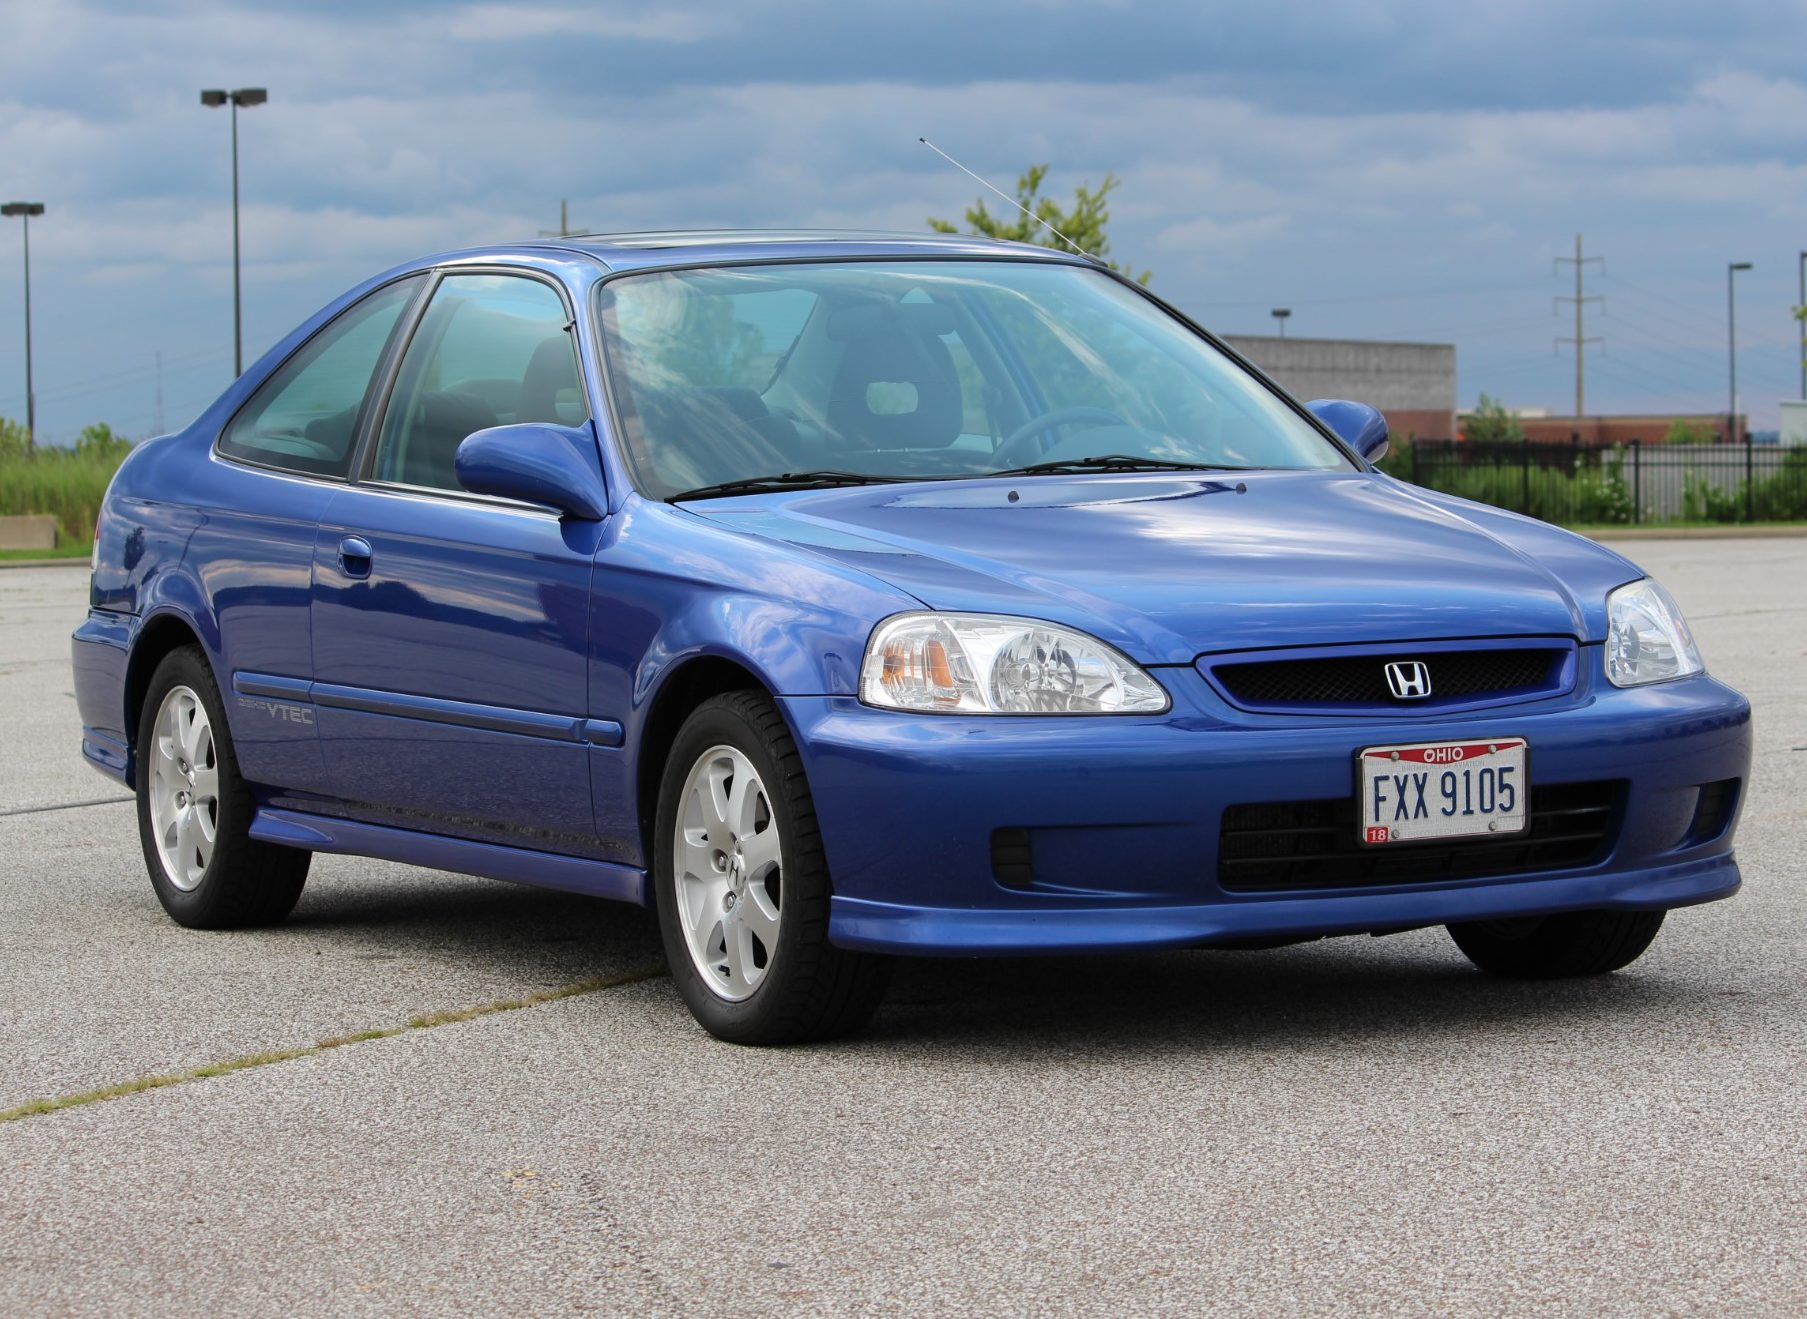 Honda civic 2000 года. Honda Civic 1999. Хонда Цивик седан 1999. Honda Civic 1999 седан. Honda Civic si 1999.